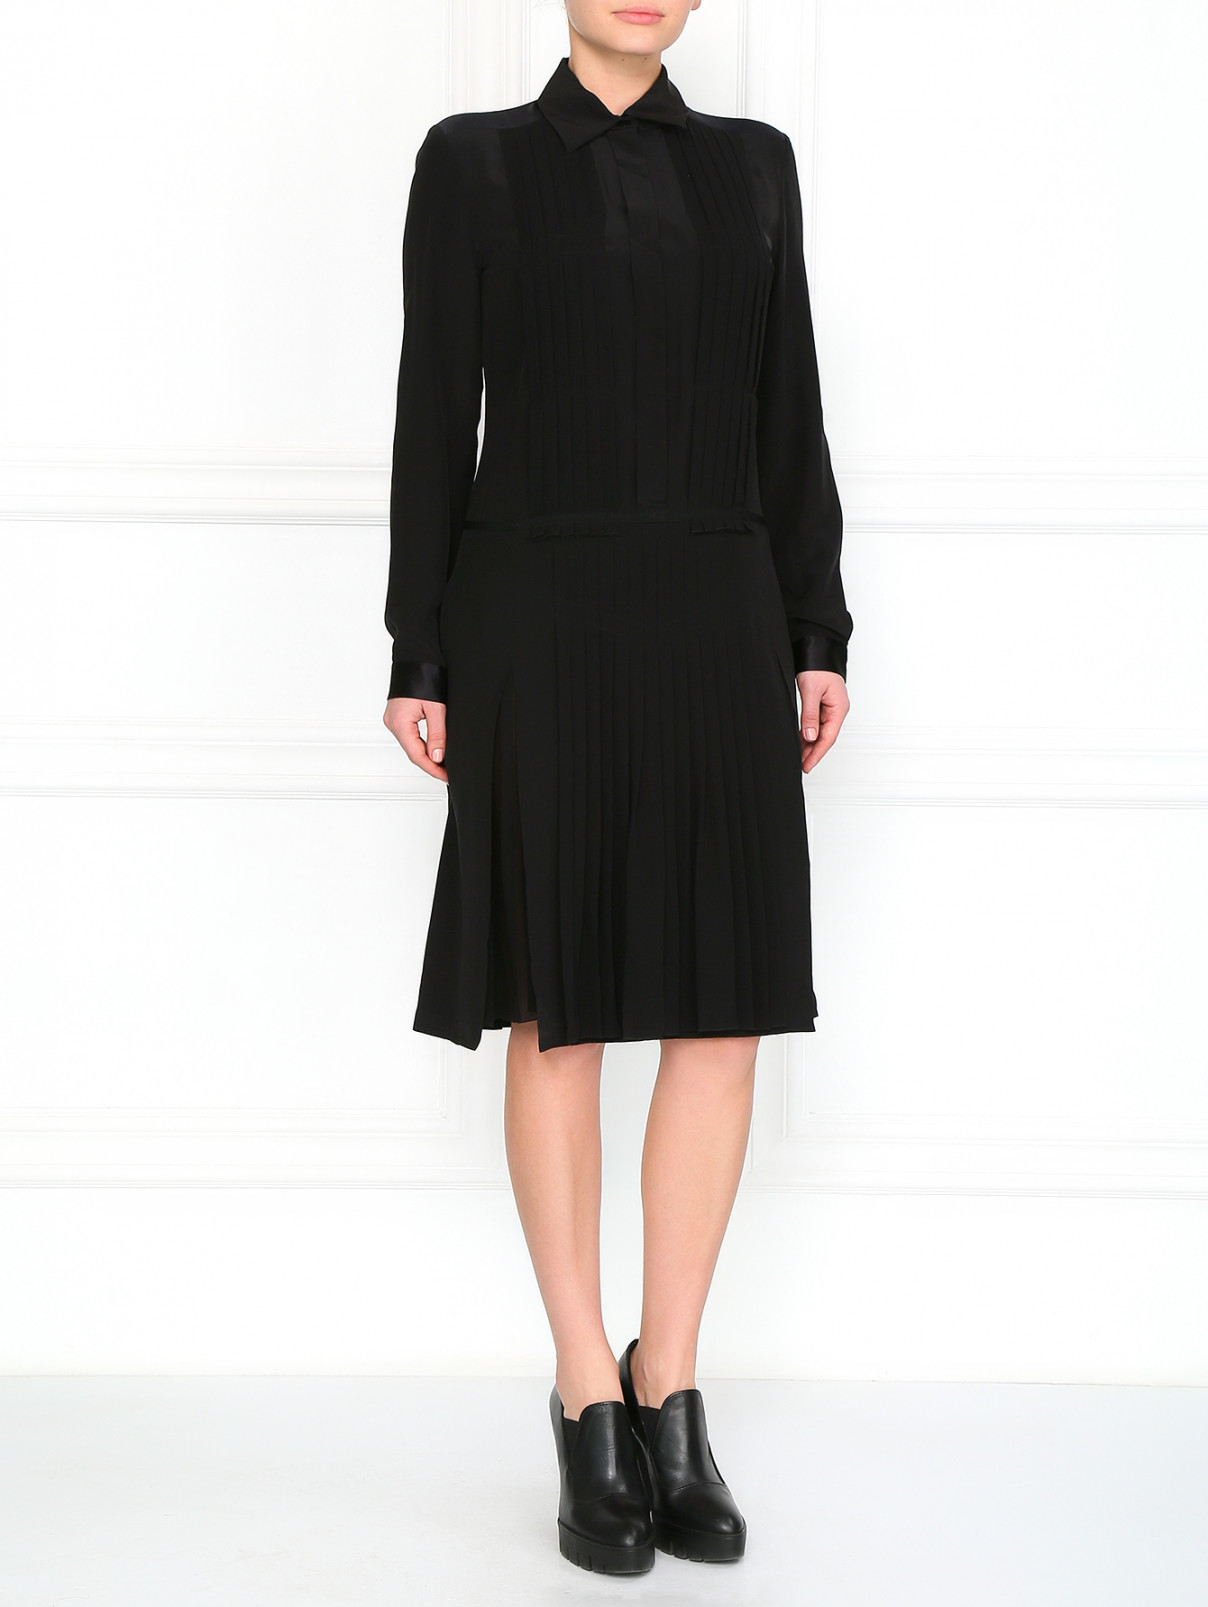 Платье с плиссированной юбкой Barbara Bui  –  Модель Общий вид  – Цвет:  Черный